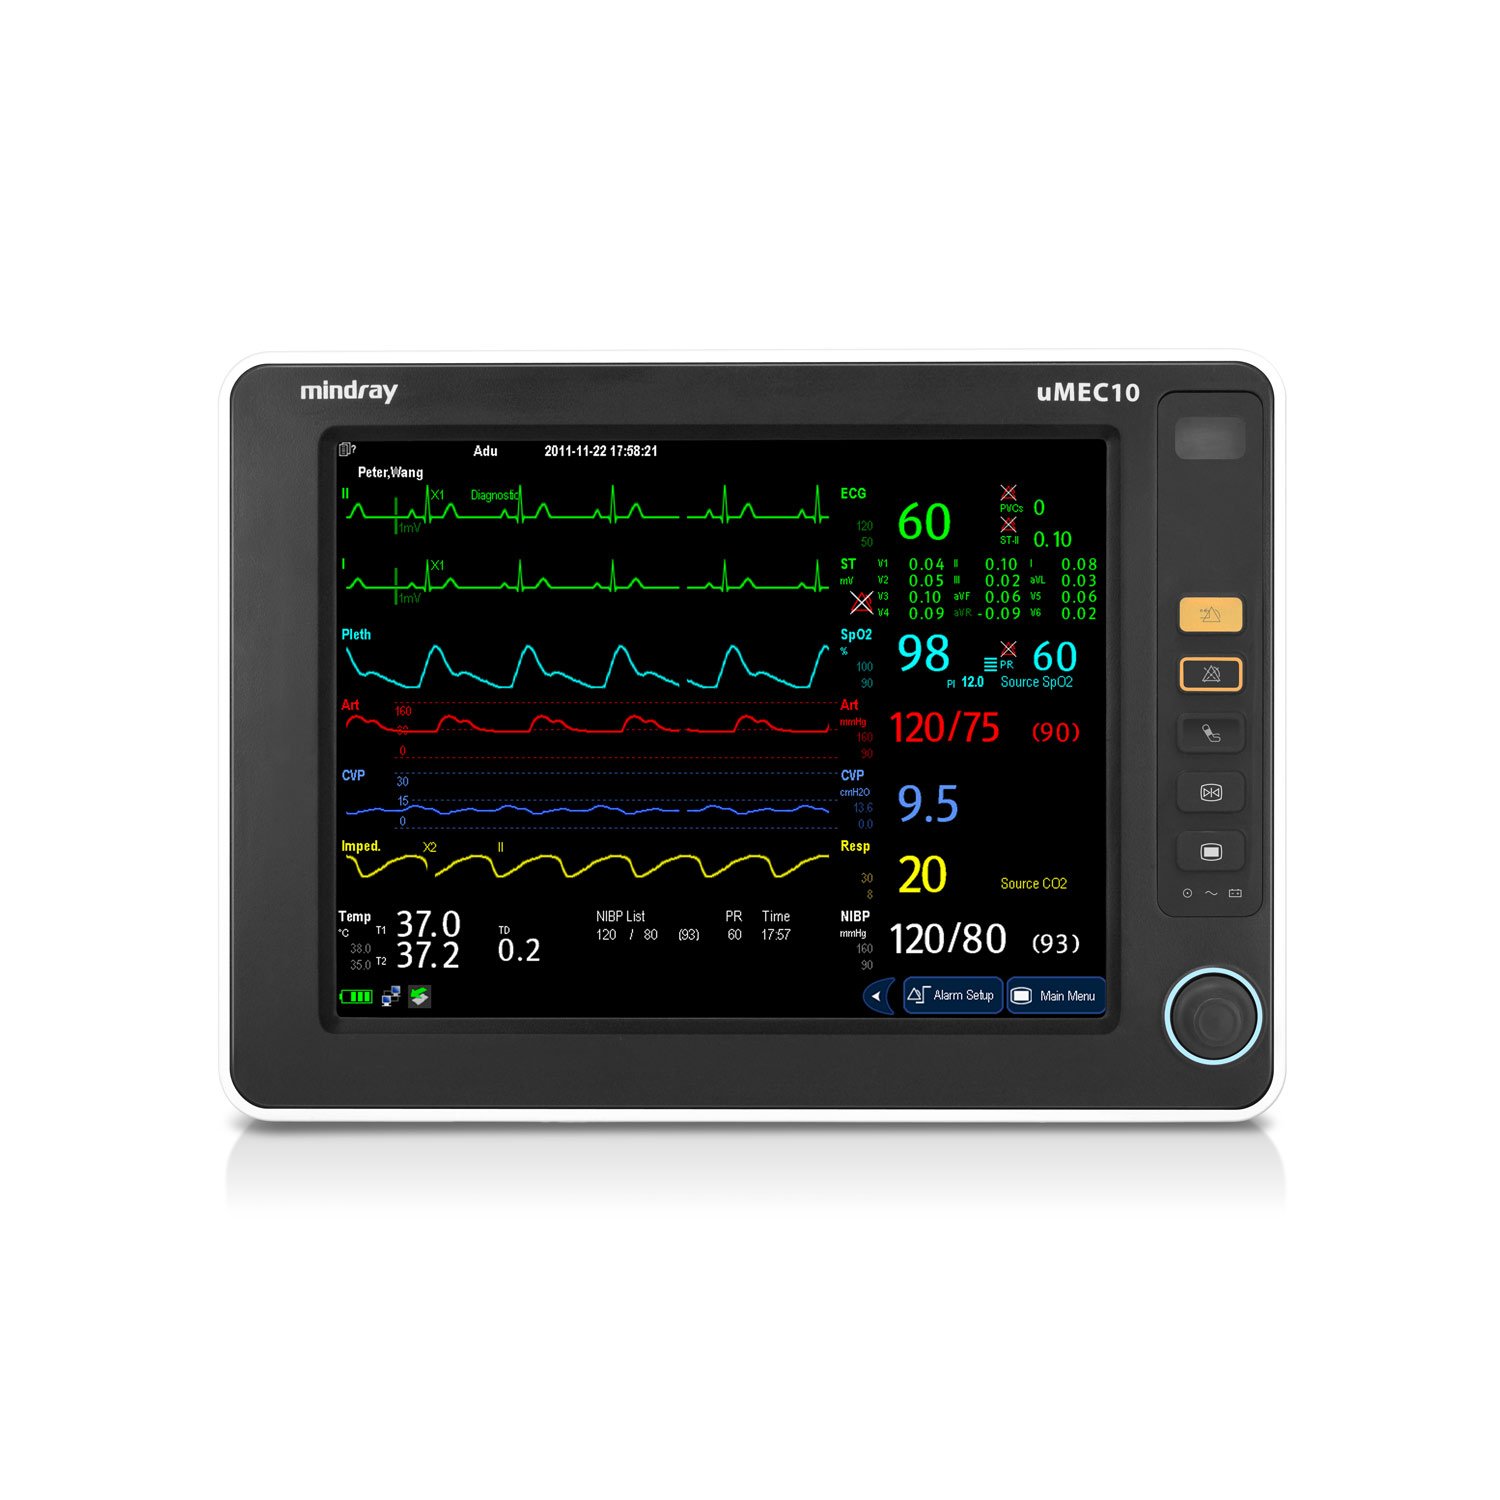 Monitor theo dõi bệnh nhân uMEC 10